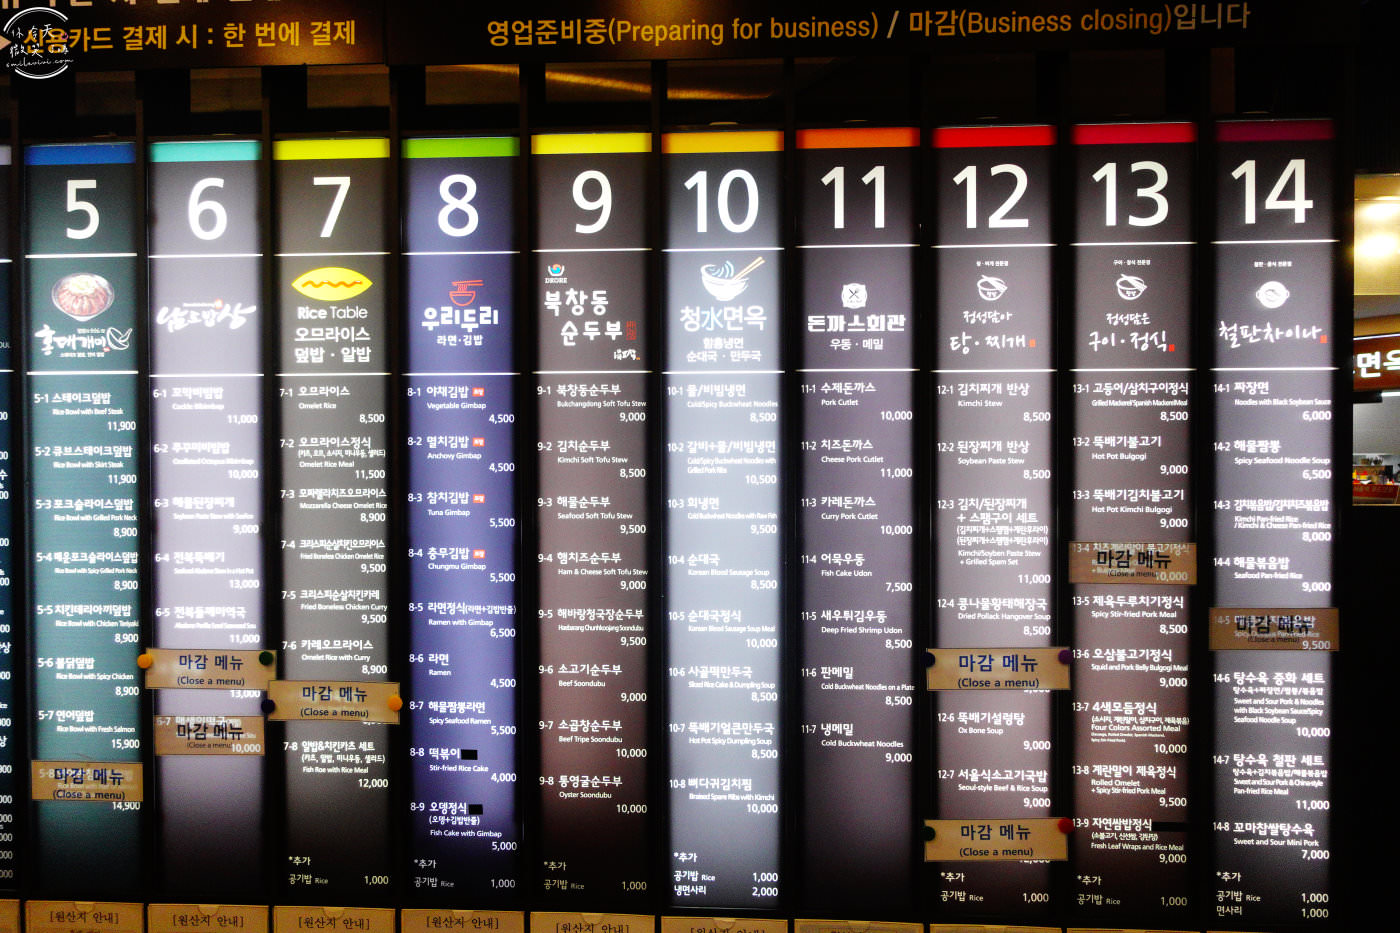 首爾∥首爾站美食街(푸드코트;Food Court)，多種韓式料理選擇︱首爾站推薦餐廳︱CP值高韓式料理︱泡麵、海苔飯捲、年糕套餐︱首爾餐廳︱韓國美食︱首爾美食餐廳 9 food court 12